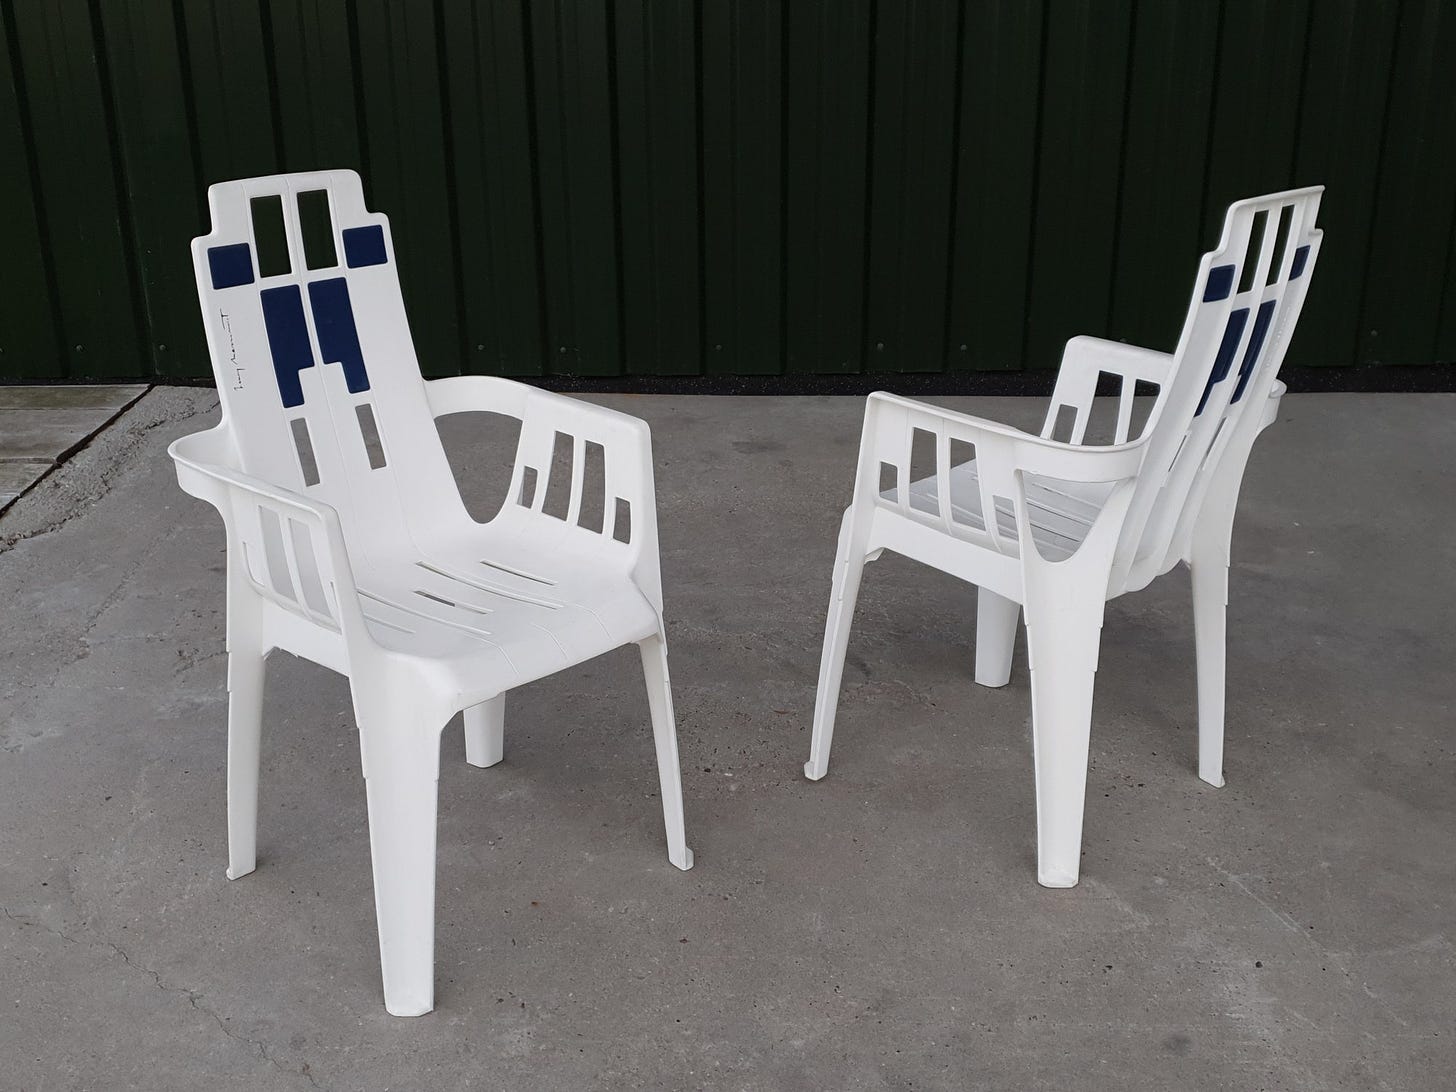 Pierre Paulin - Henry Massonnet Stamp - chairs garden chairs (2) - Boston  garden chair - Catawiki